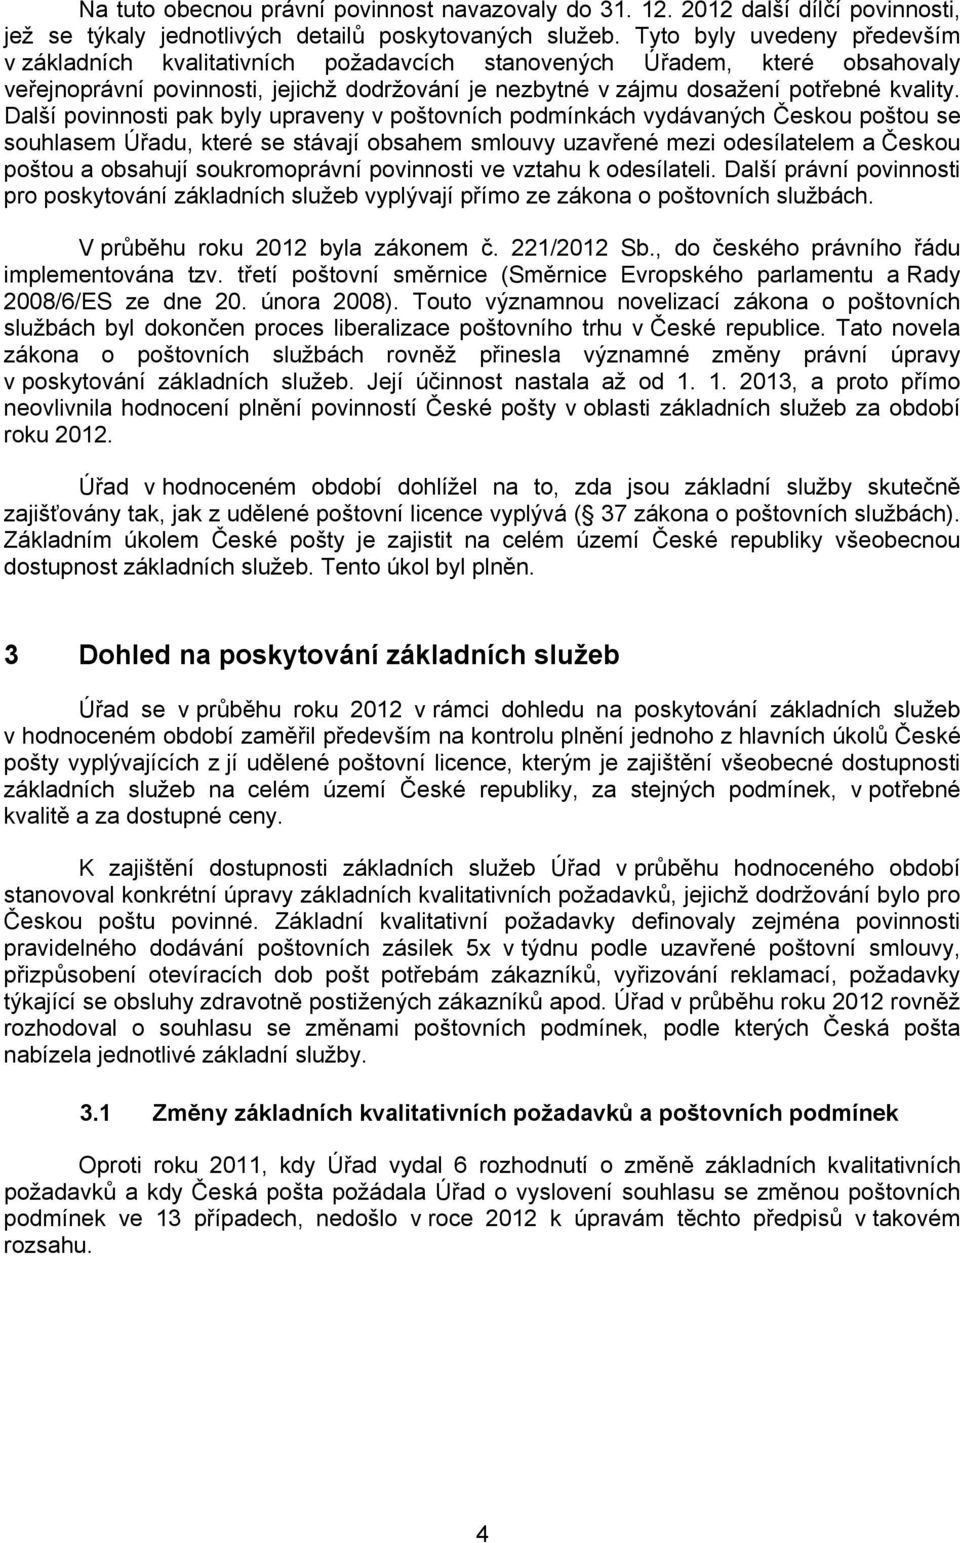 Další povinnosti pak byly upraveny v poštovních podmínkách vydávaných Českou poštou se souhlasem Úřadu, které se stávají obsahem smlouvy uzavřené mezi odesílatelem a Českou poštou a obsahují